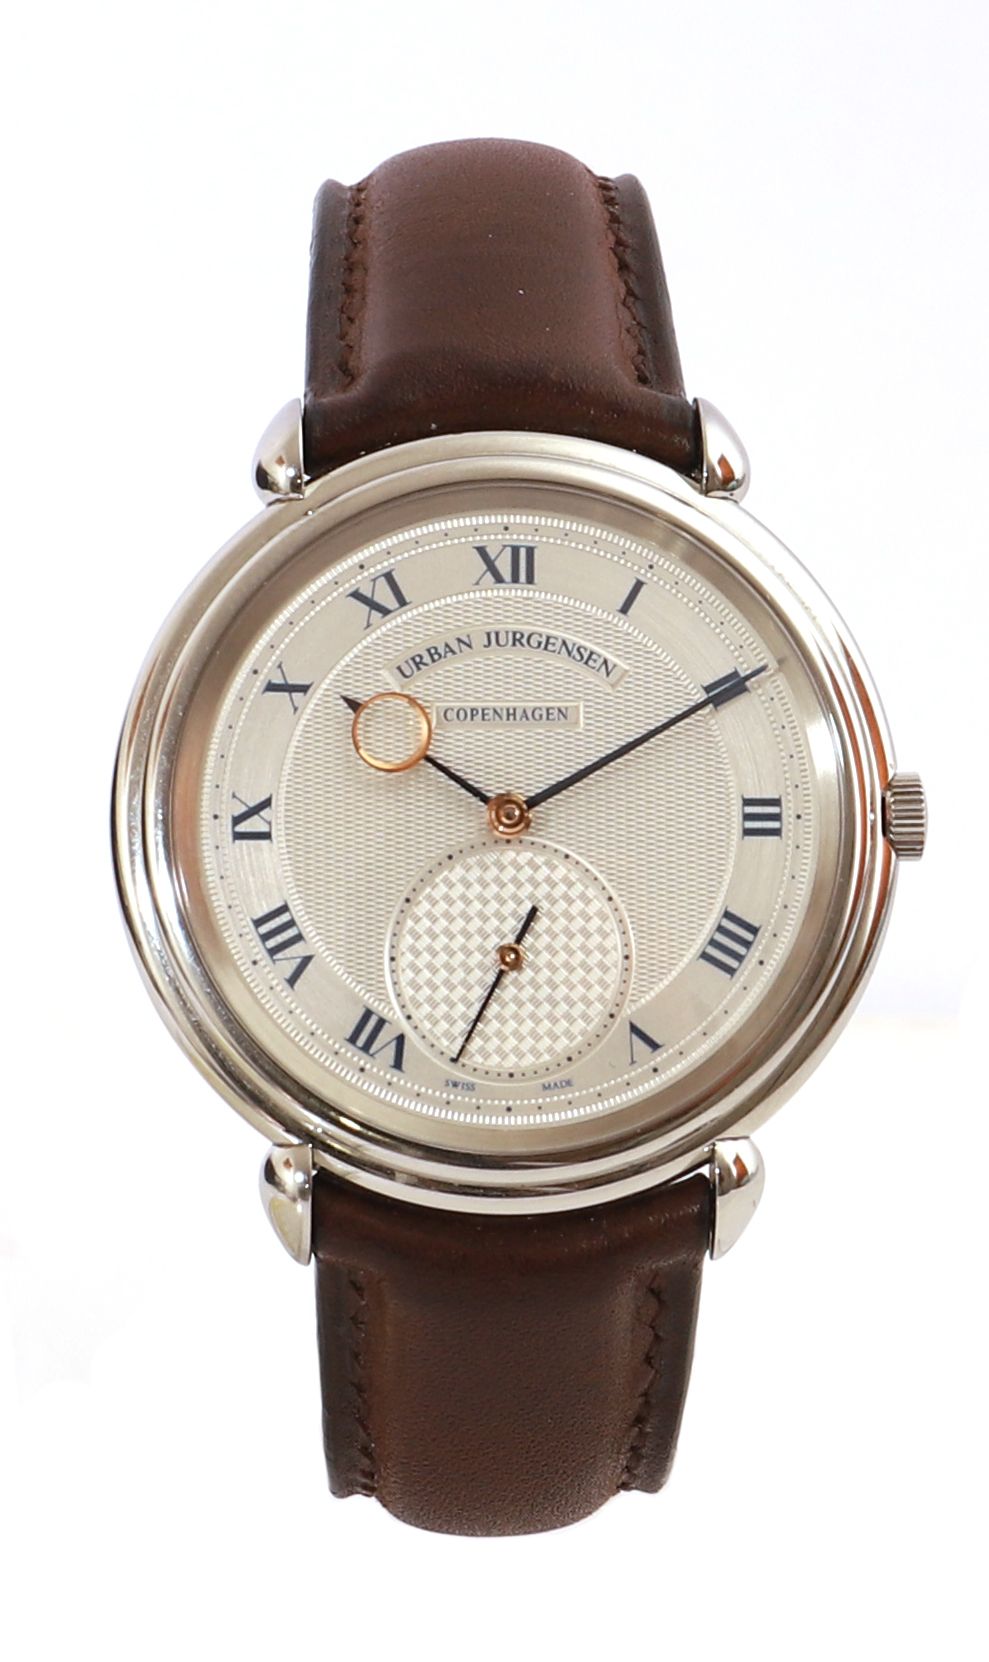 Null URBAN JURGENSEN About 2000

Ref 1140

Men's stainless steel wristwatch, sil&hellip;